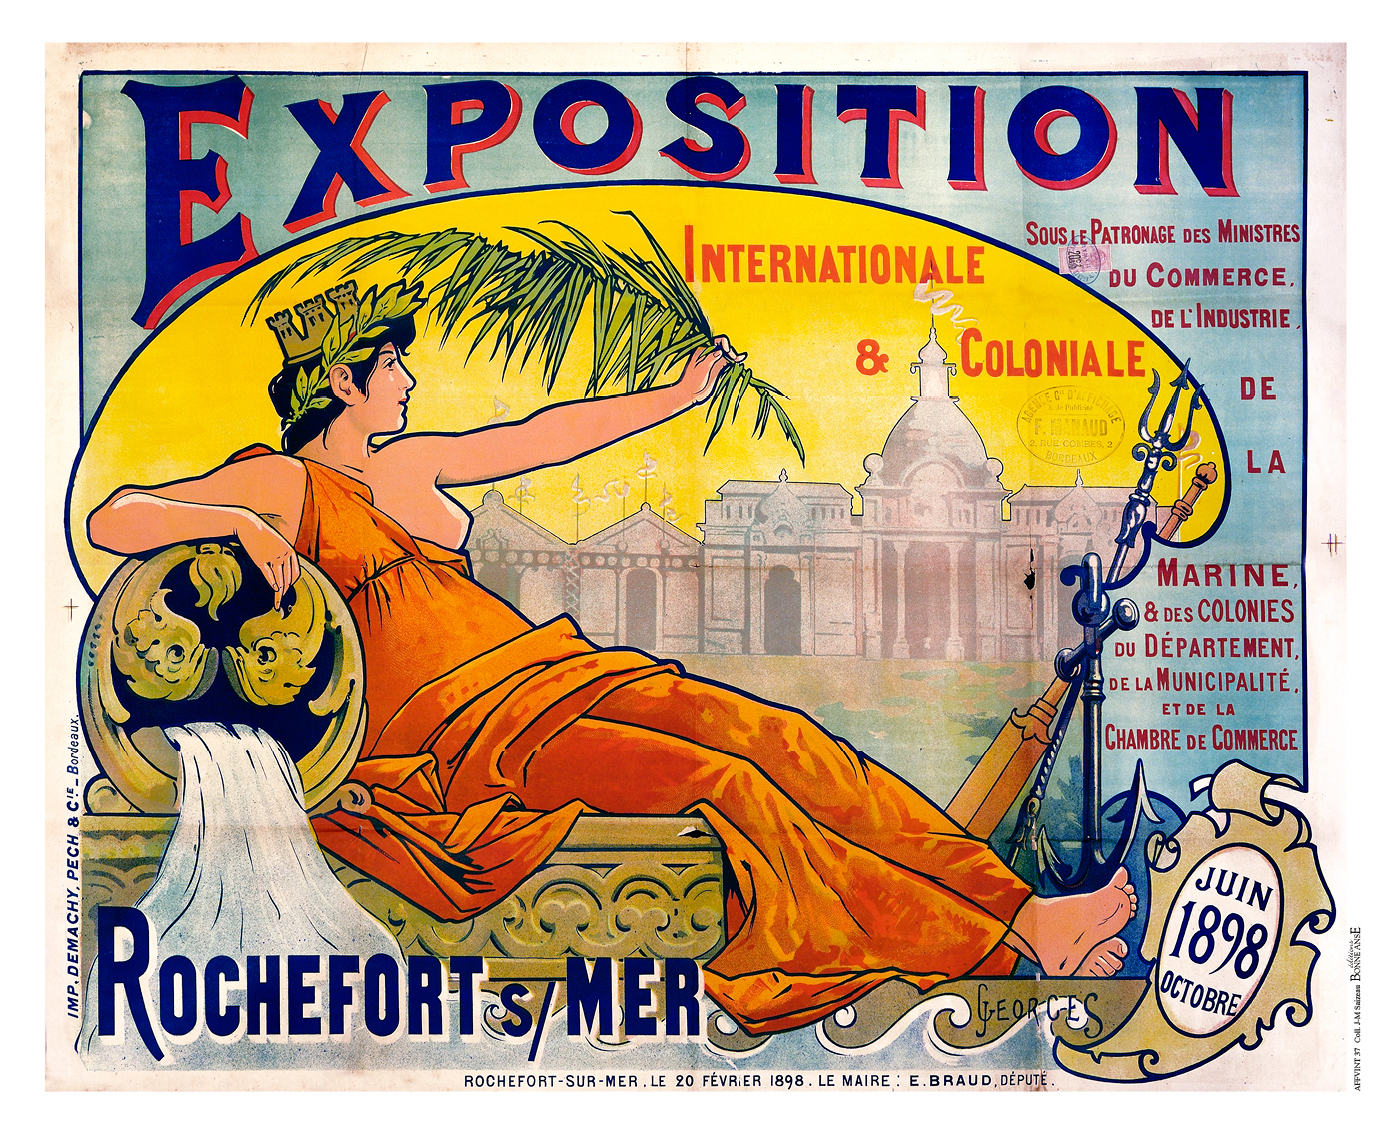 Exposition Internationale et Coloniale